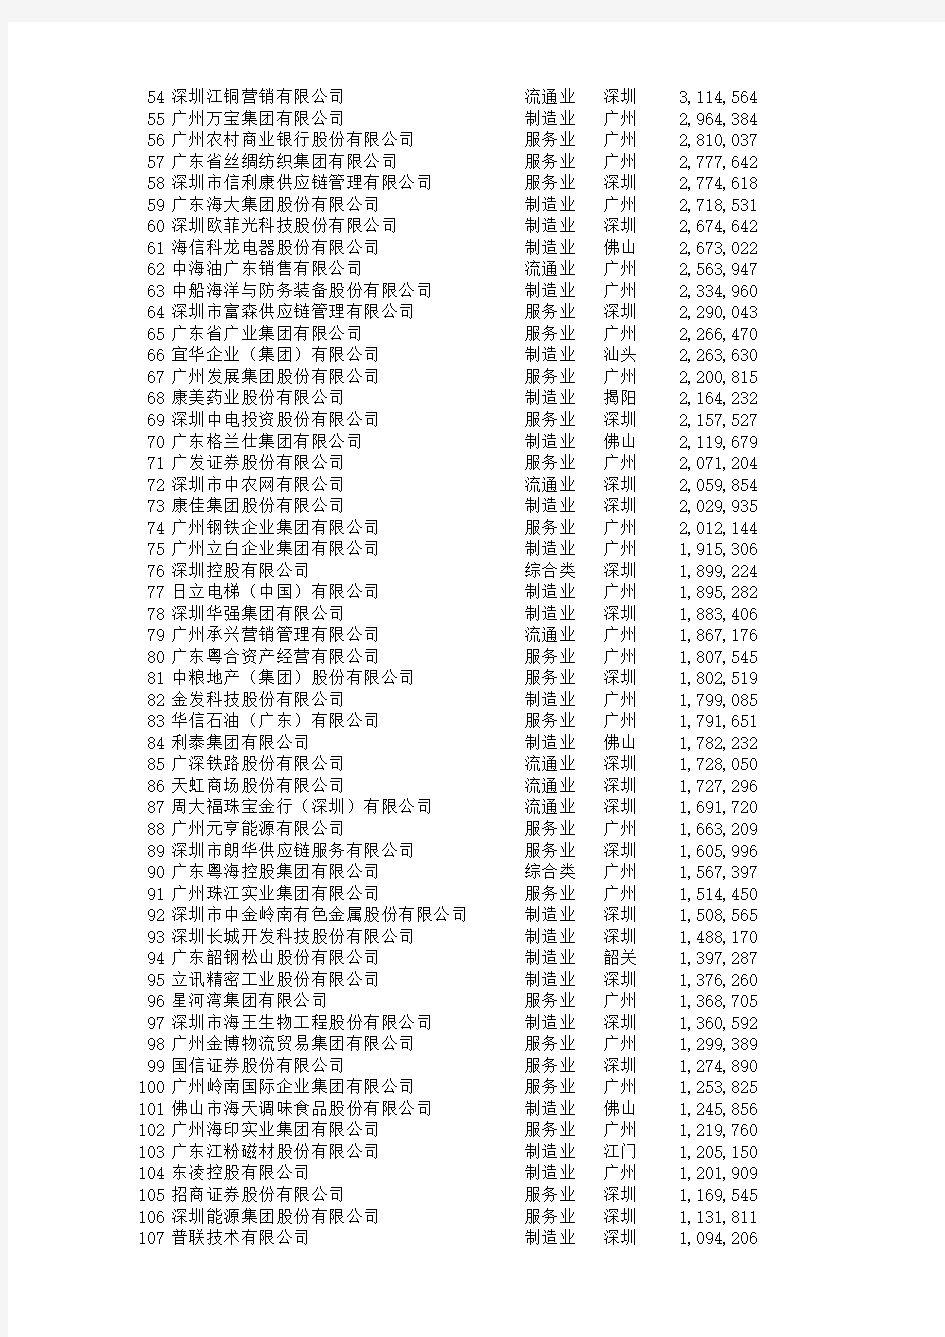 广东500强营收名单(16年营业收入)